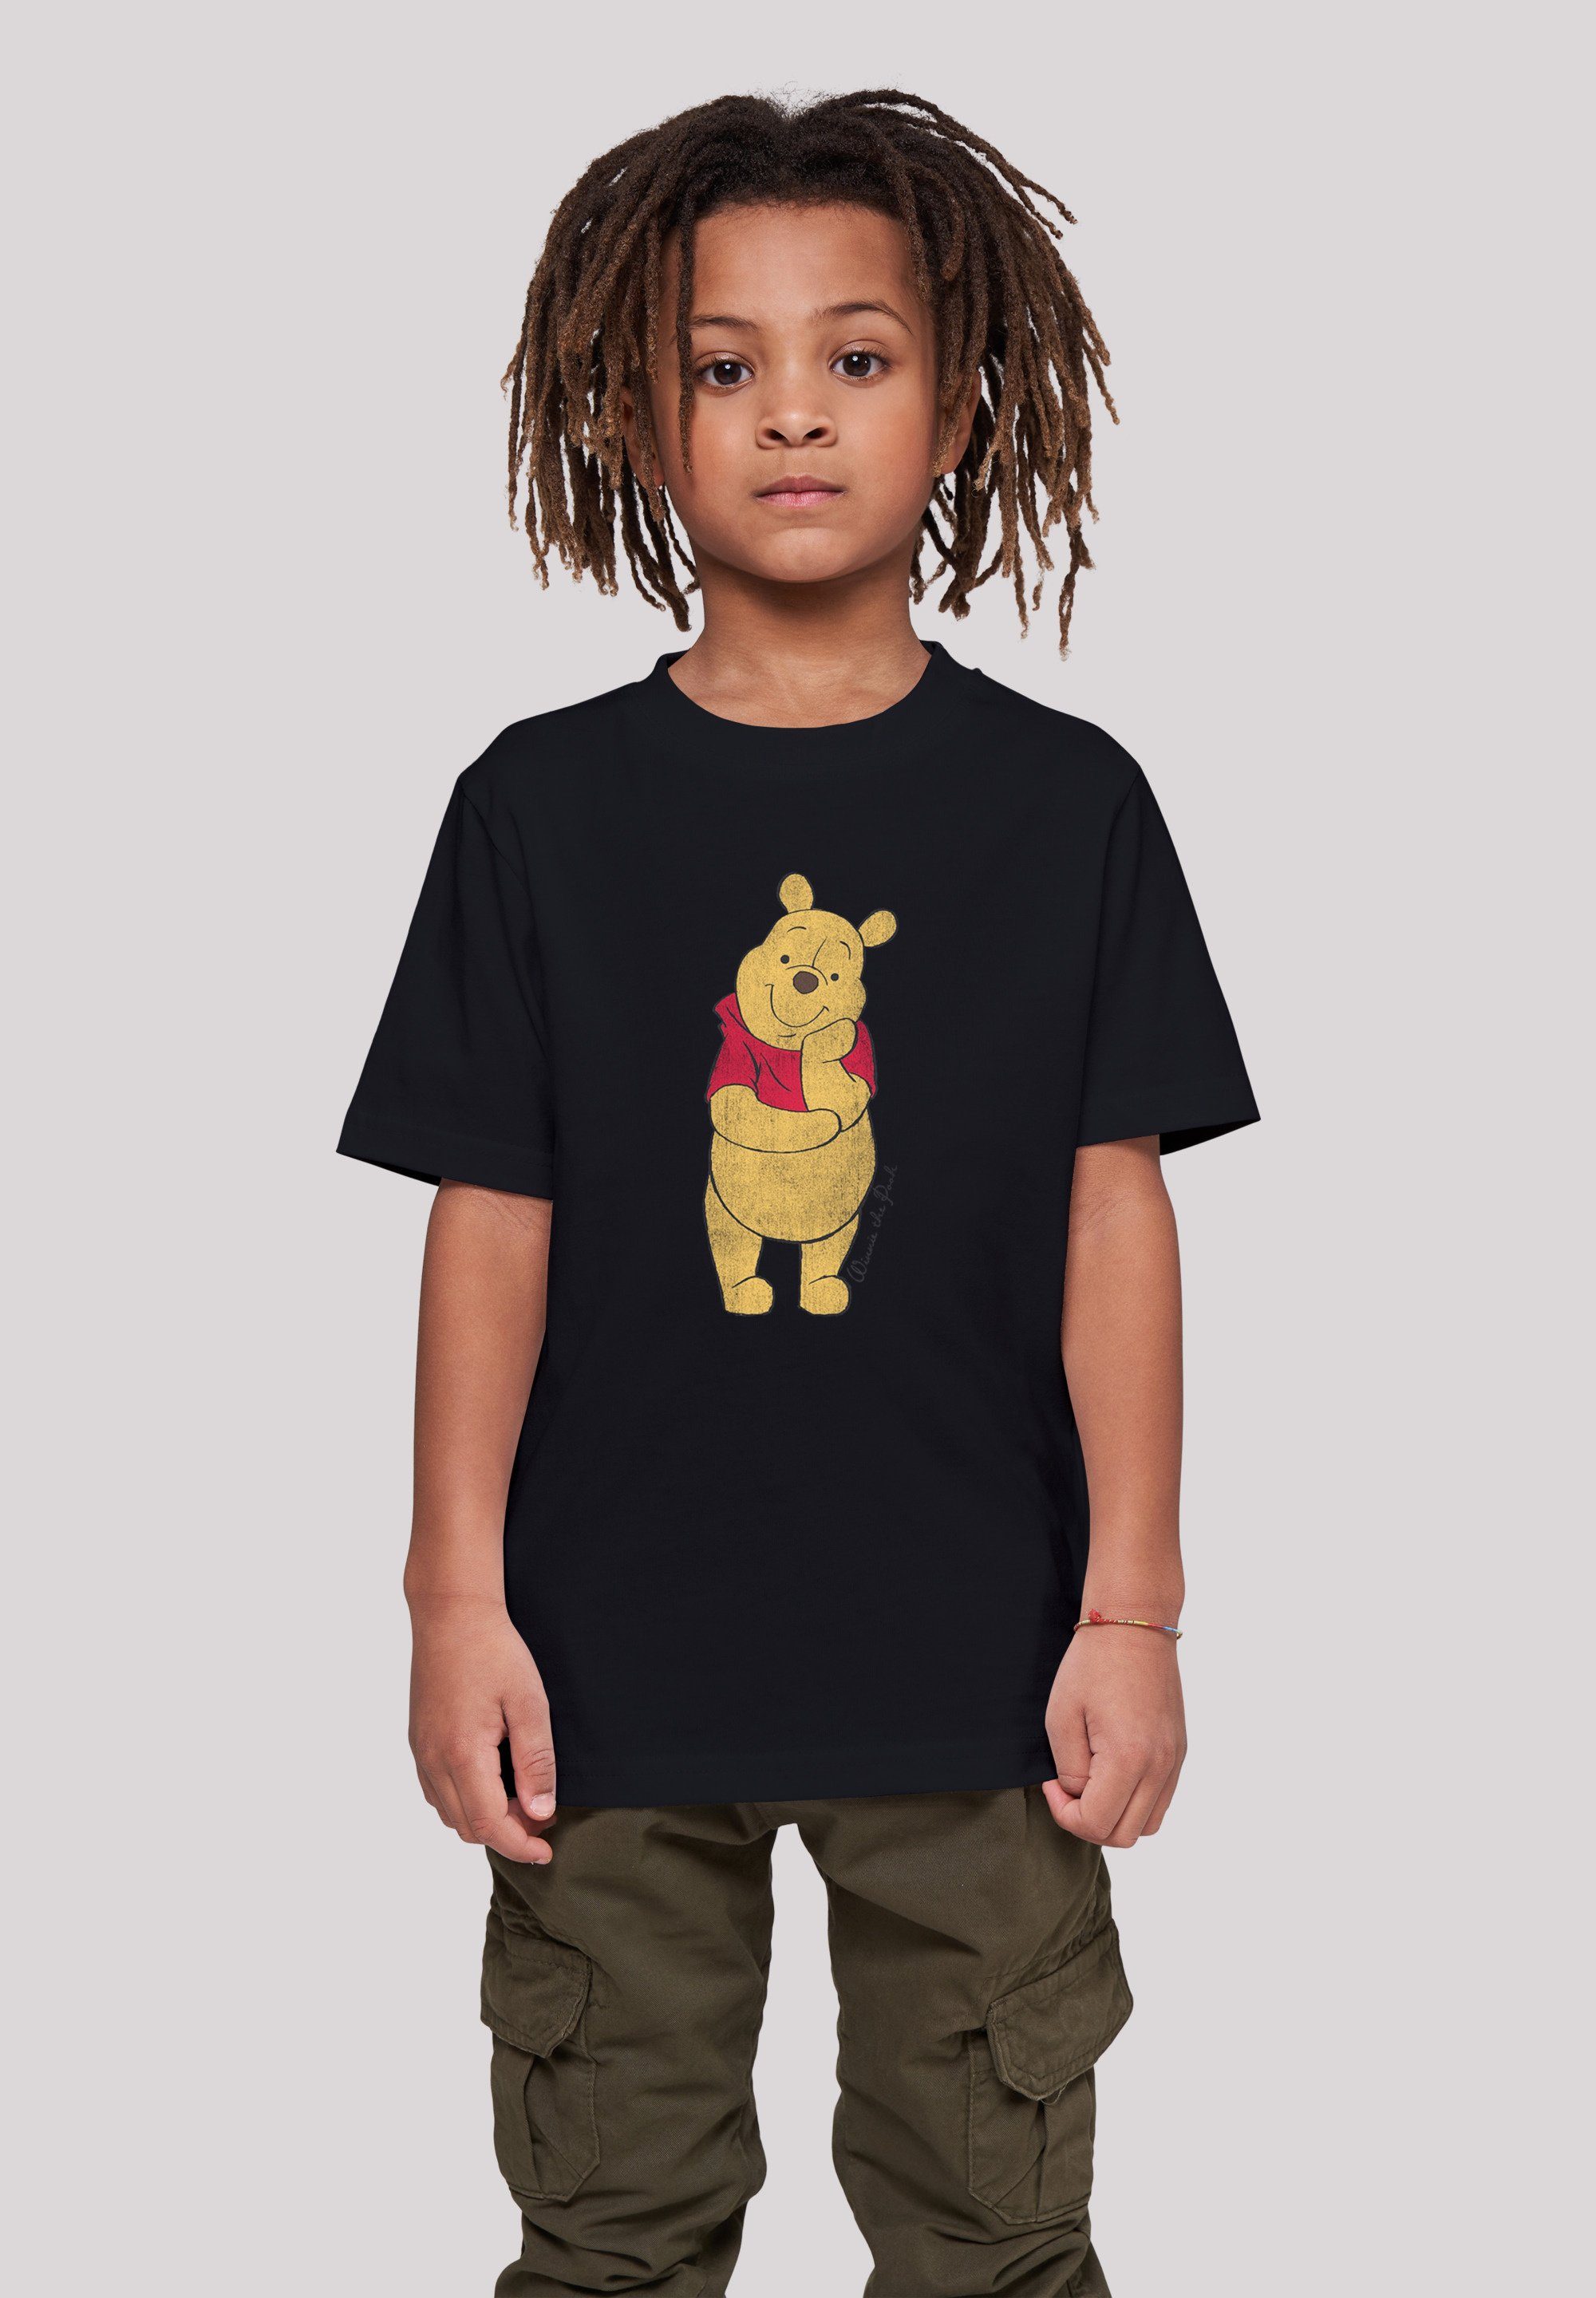 Unisex Kinder,Premium F4NT4STIC Disney Classic Pooh Merch,Jungen,Mädchen,Bedruckt The Winnie schwarz T-Shirt